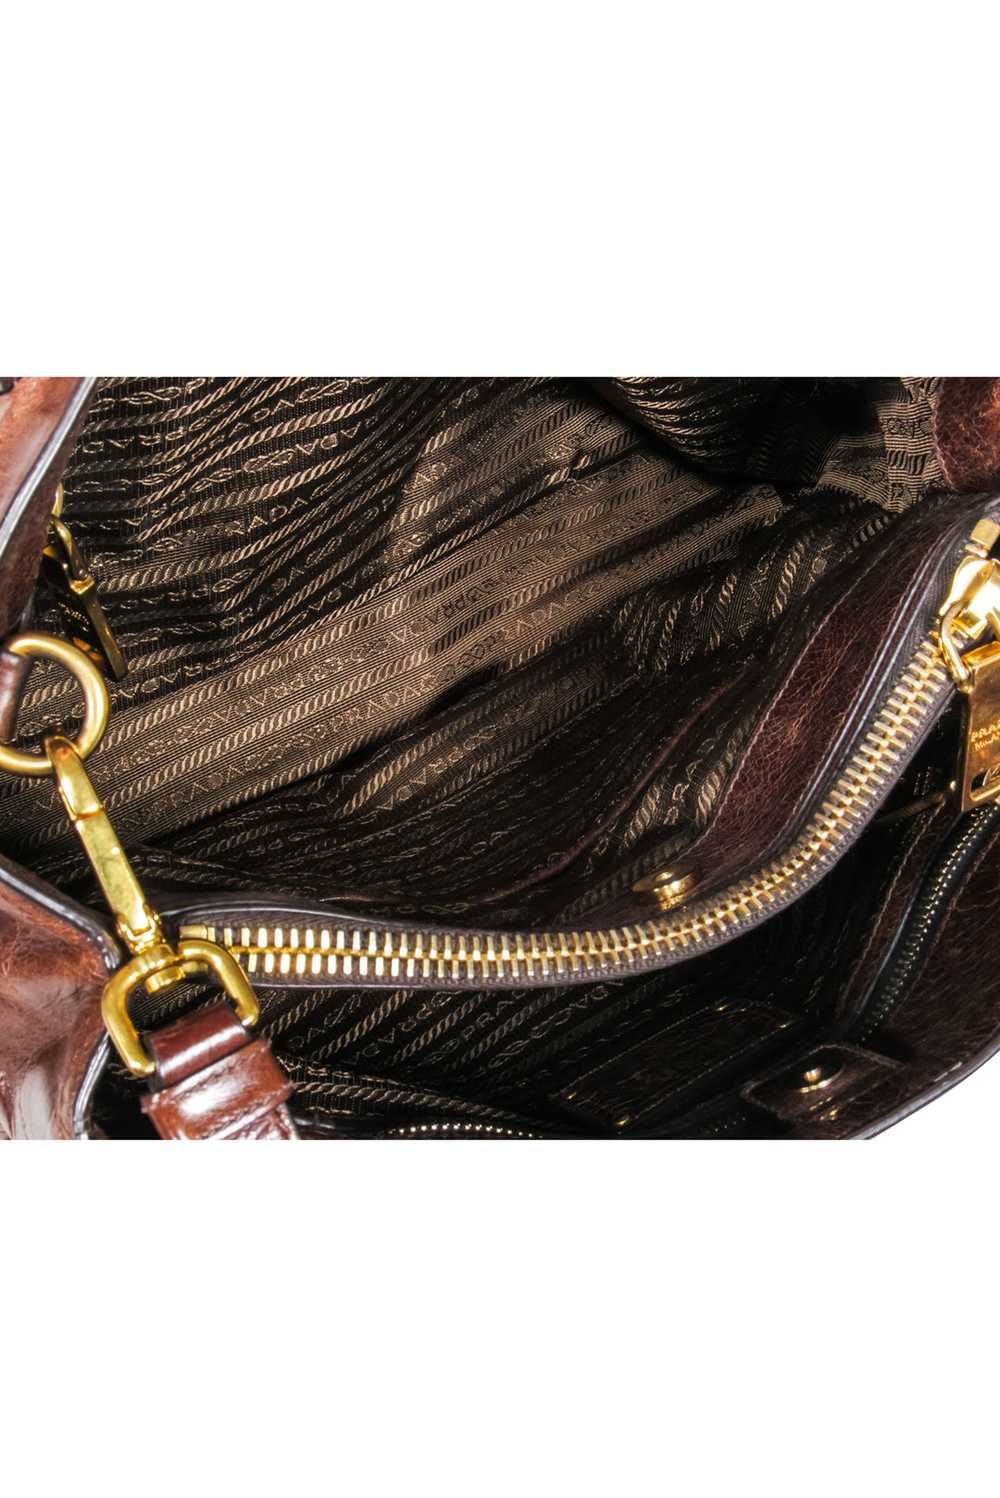 Prada - Brown "Vitello Shine" Handbag - image 5